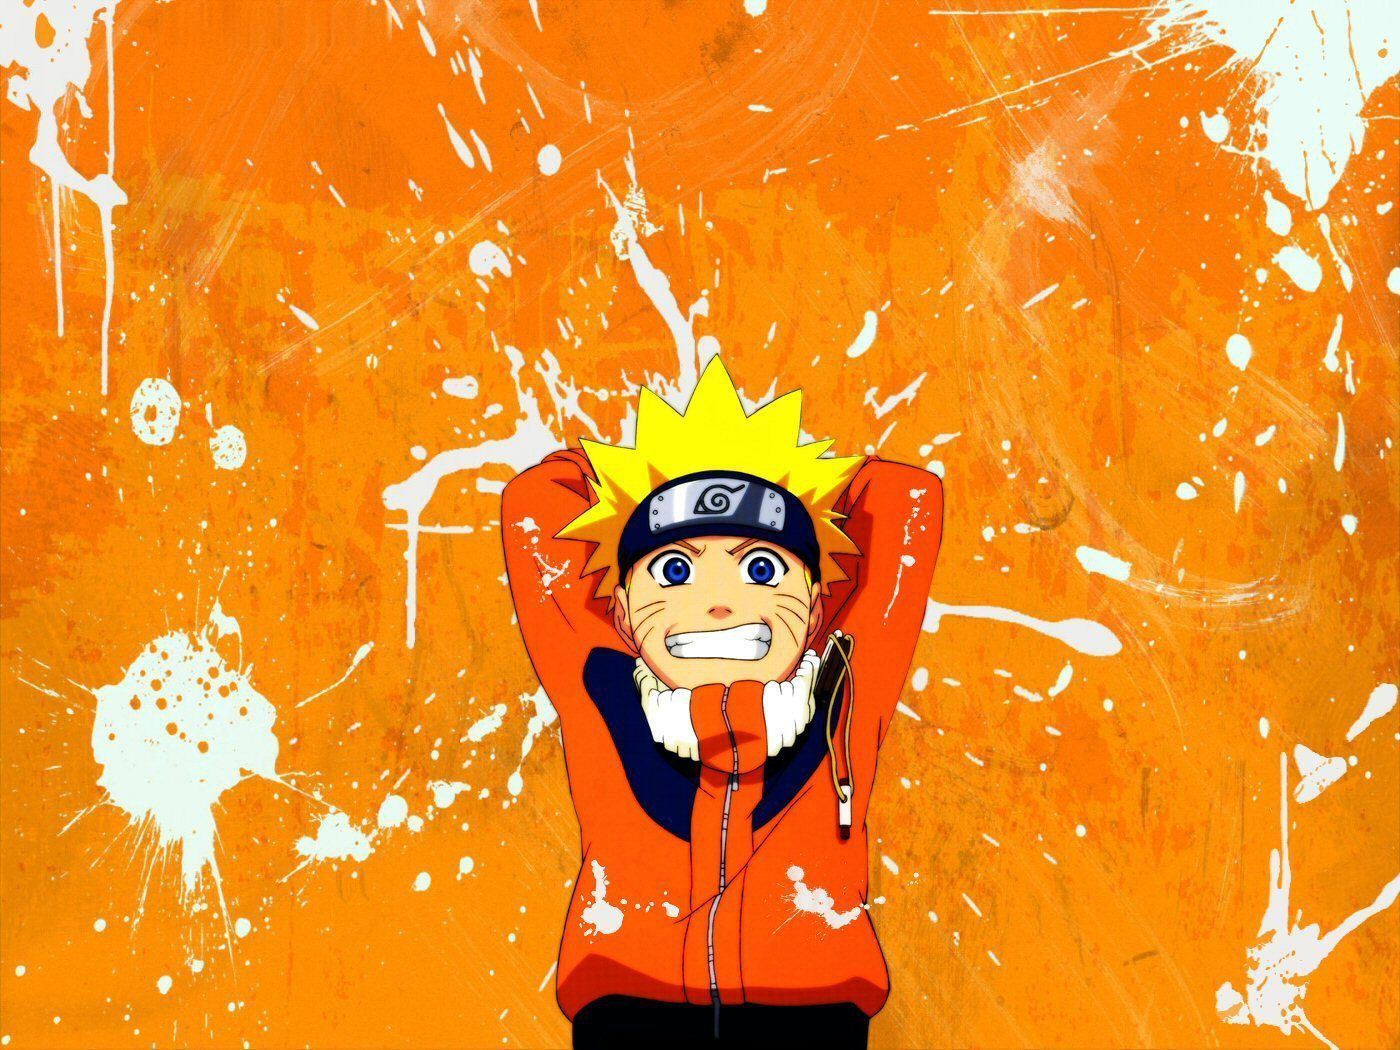 Orange Naruto Wallpapers - Màu cam rực rỡ phát triển thành hình ảnh đầy tinh tế và sống động trên những hình nền Naruto. Hãy khám phá các tác phẩm mang nhiều hiệu ứng khác nhau, từ đơn giản cho tới phức tạp, đem lại trải nghiệm tuyệt vời cho màn hình của bạn.